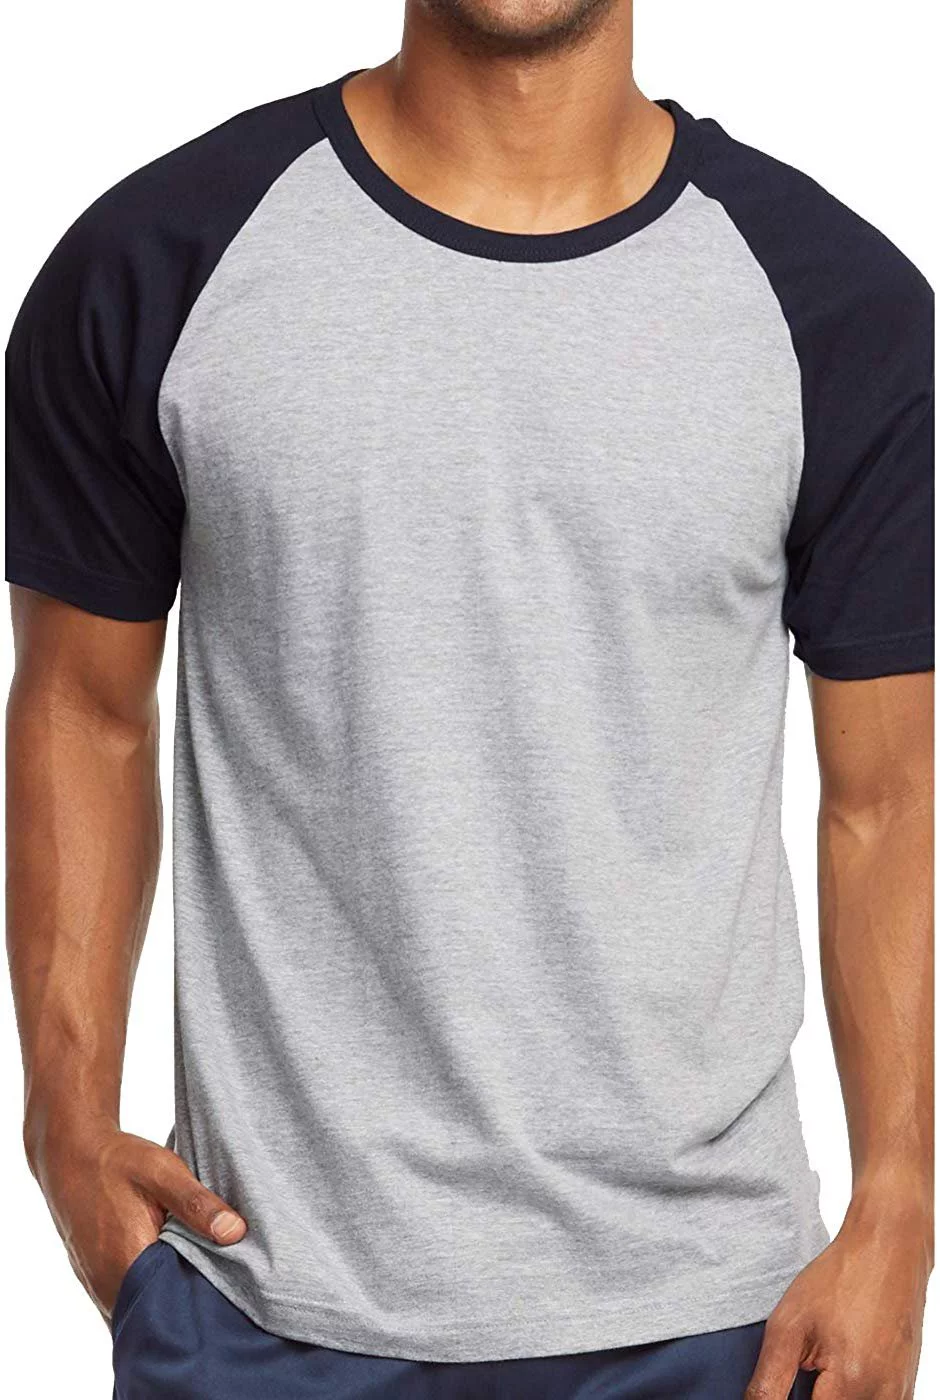 Mens Casual Short Sleeve Plain Baseball Cotton T Shirts from Bangladesh